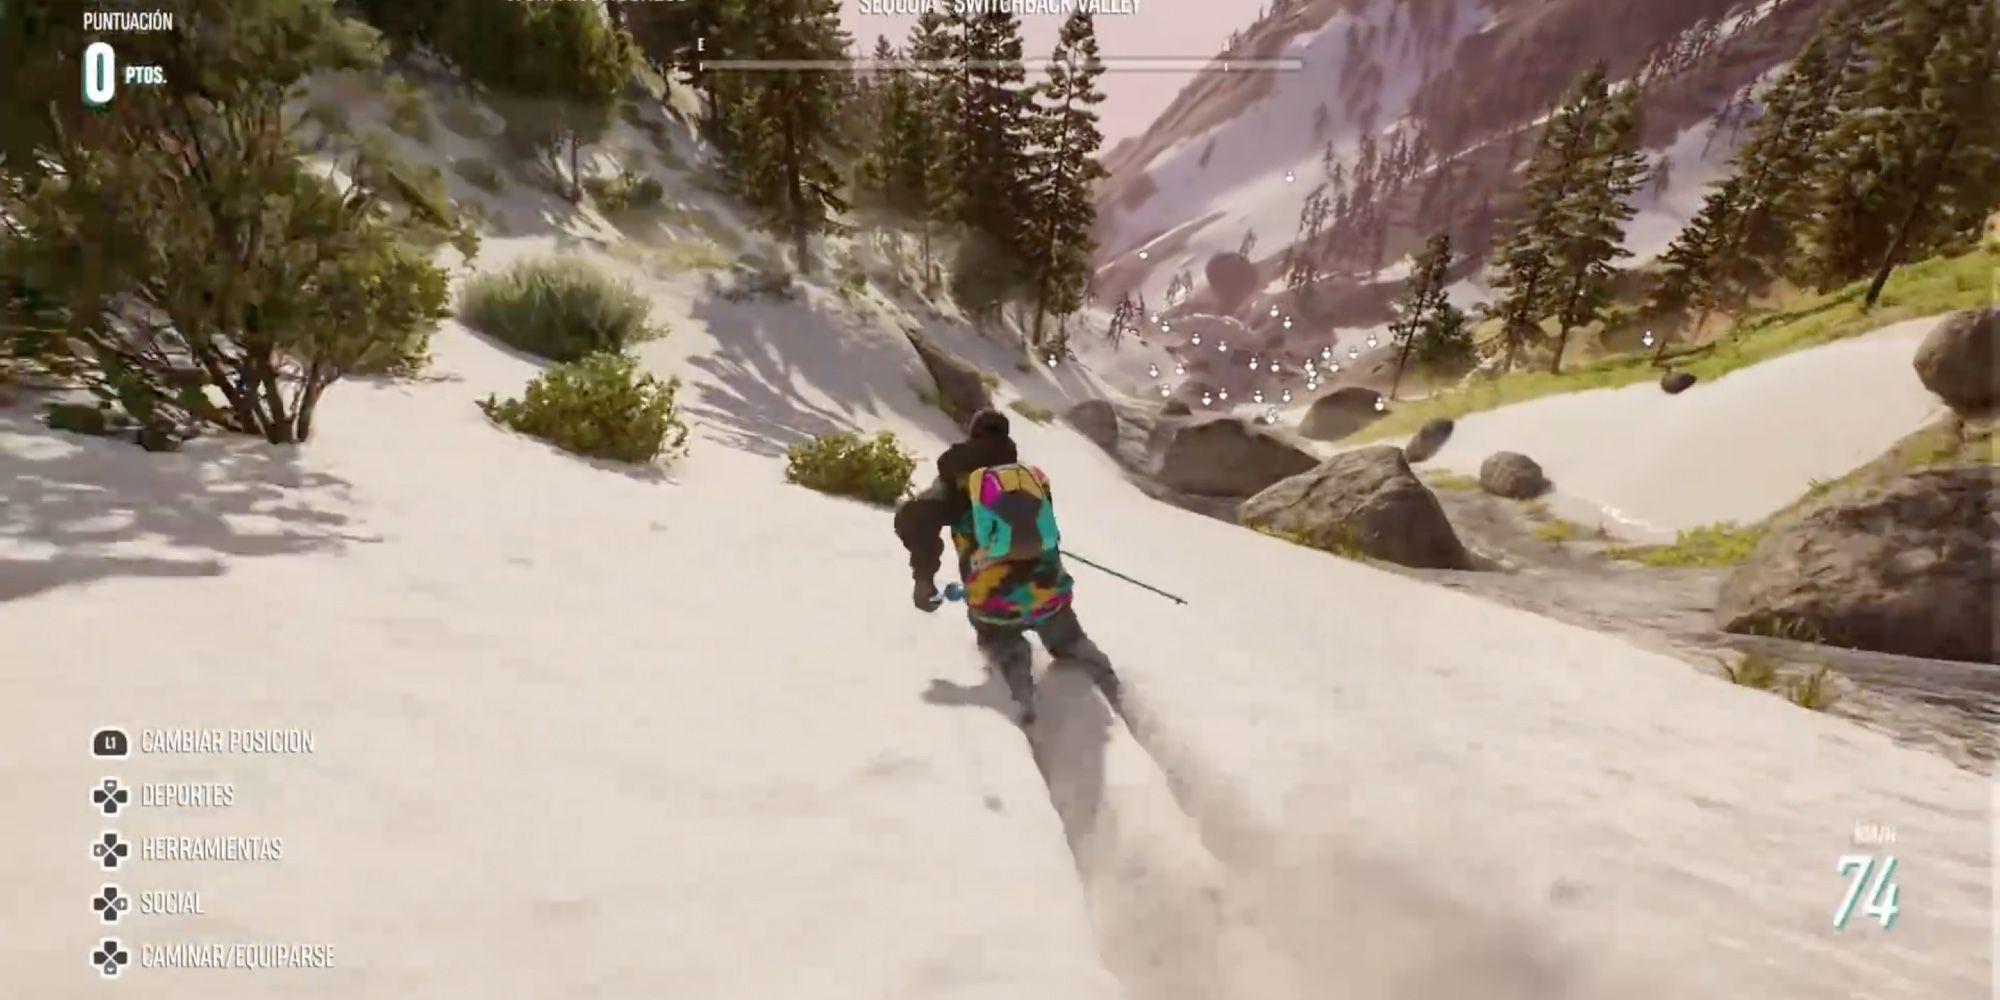 Самые реалистичные гоночные игры - Riders Republic - Игроки мчатся по склону горы